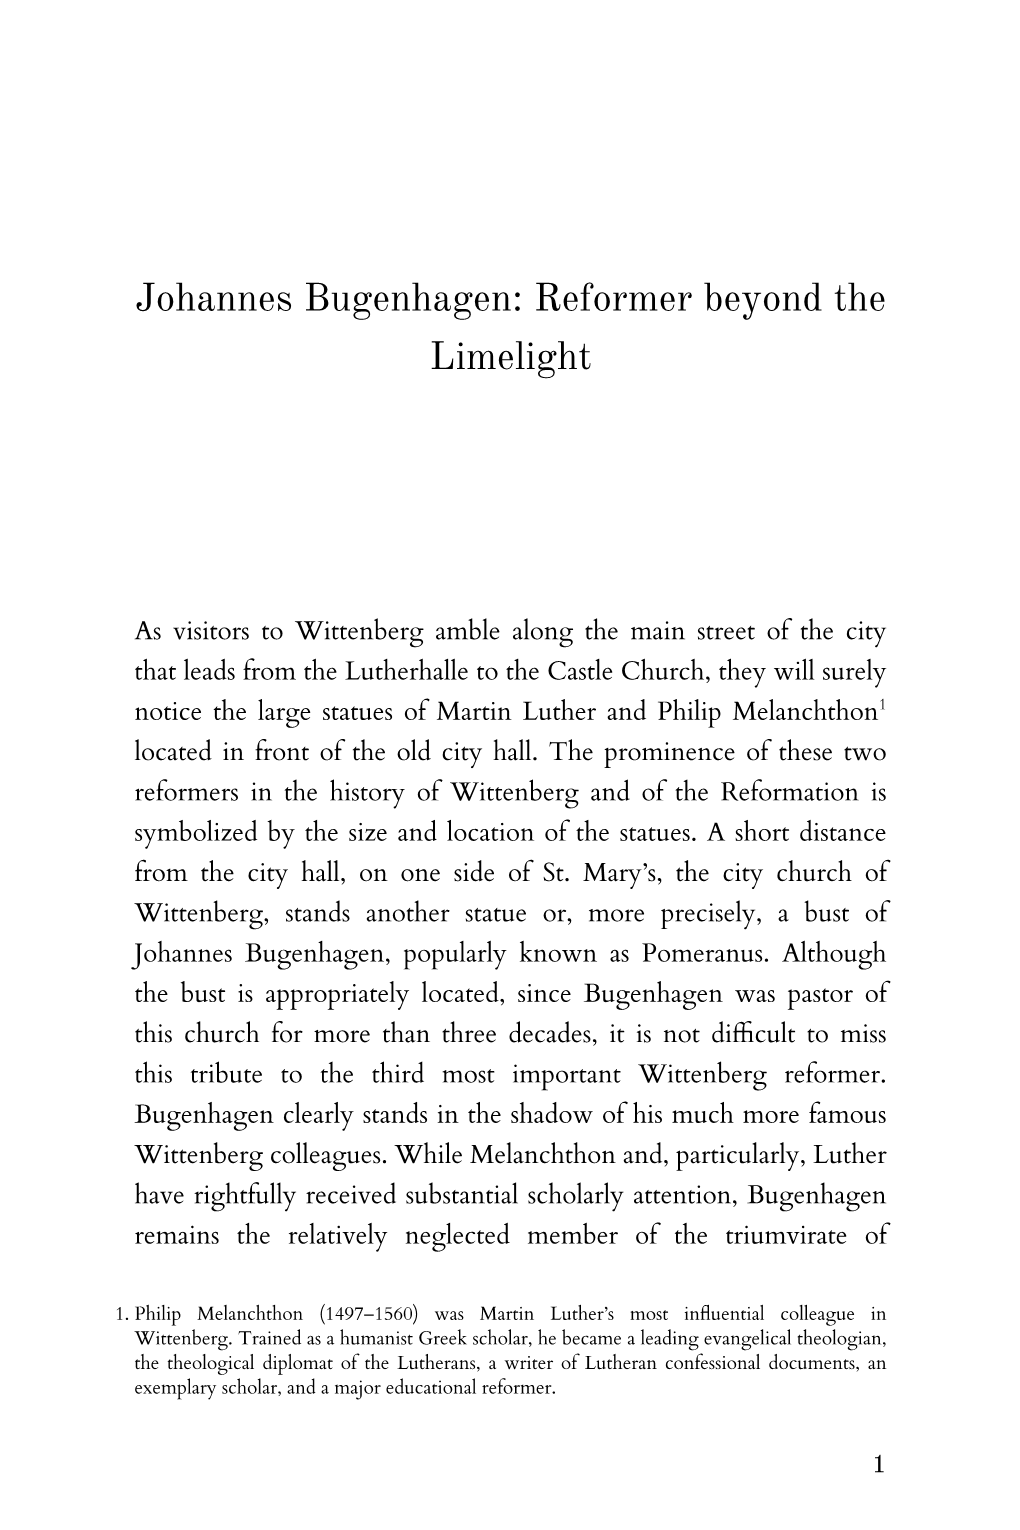 Johannes Bugenhagen: Reformer Beyond the Limelight